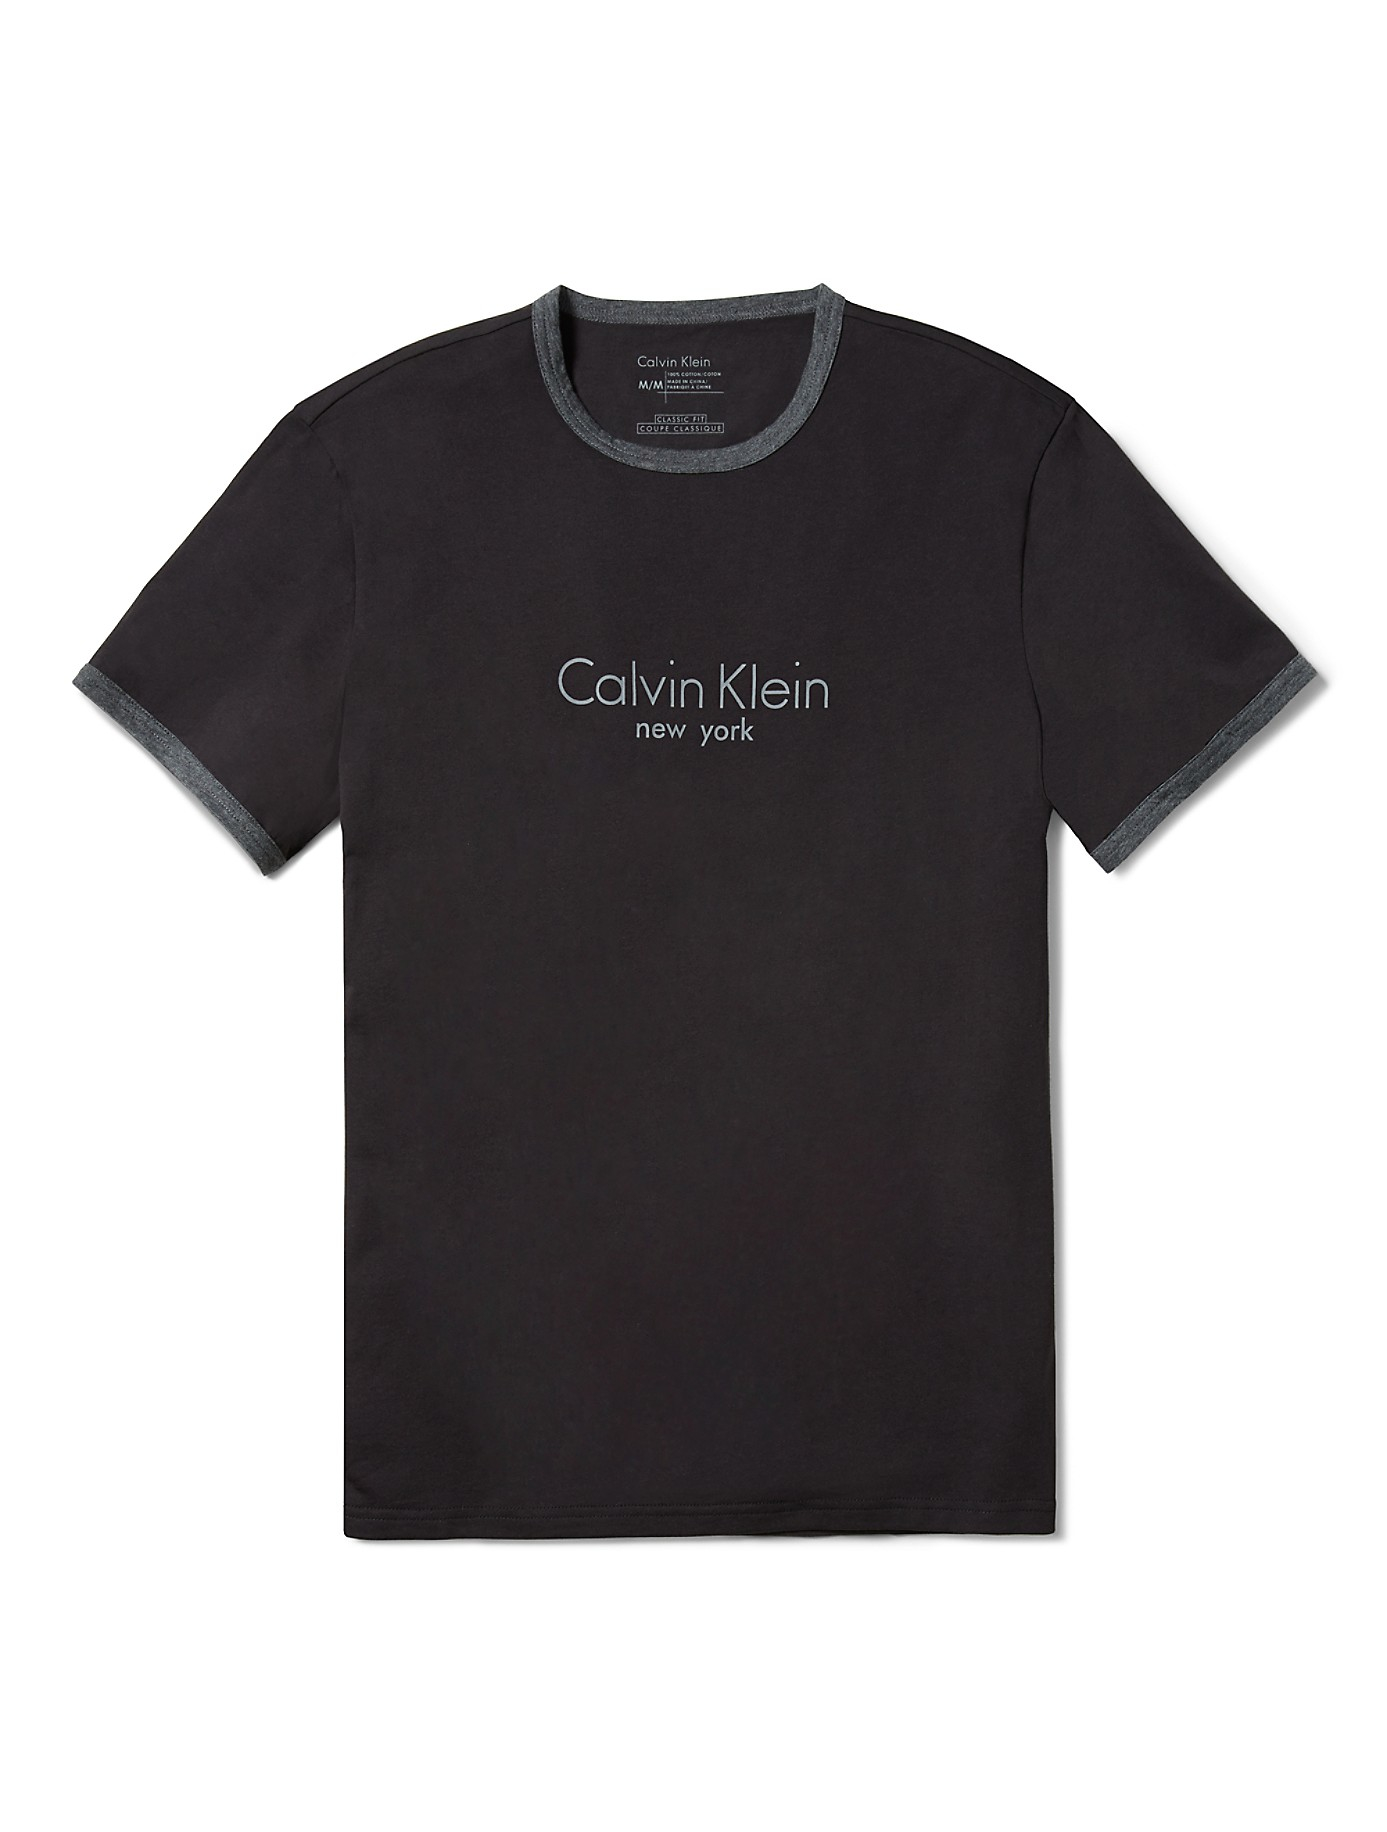 Calvin Klein White Label Classic T-Shirt Logo Lyst Black for in Men Fit Ringer 